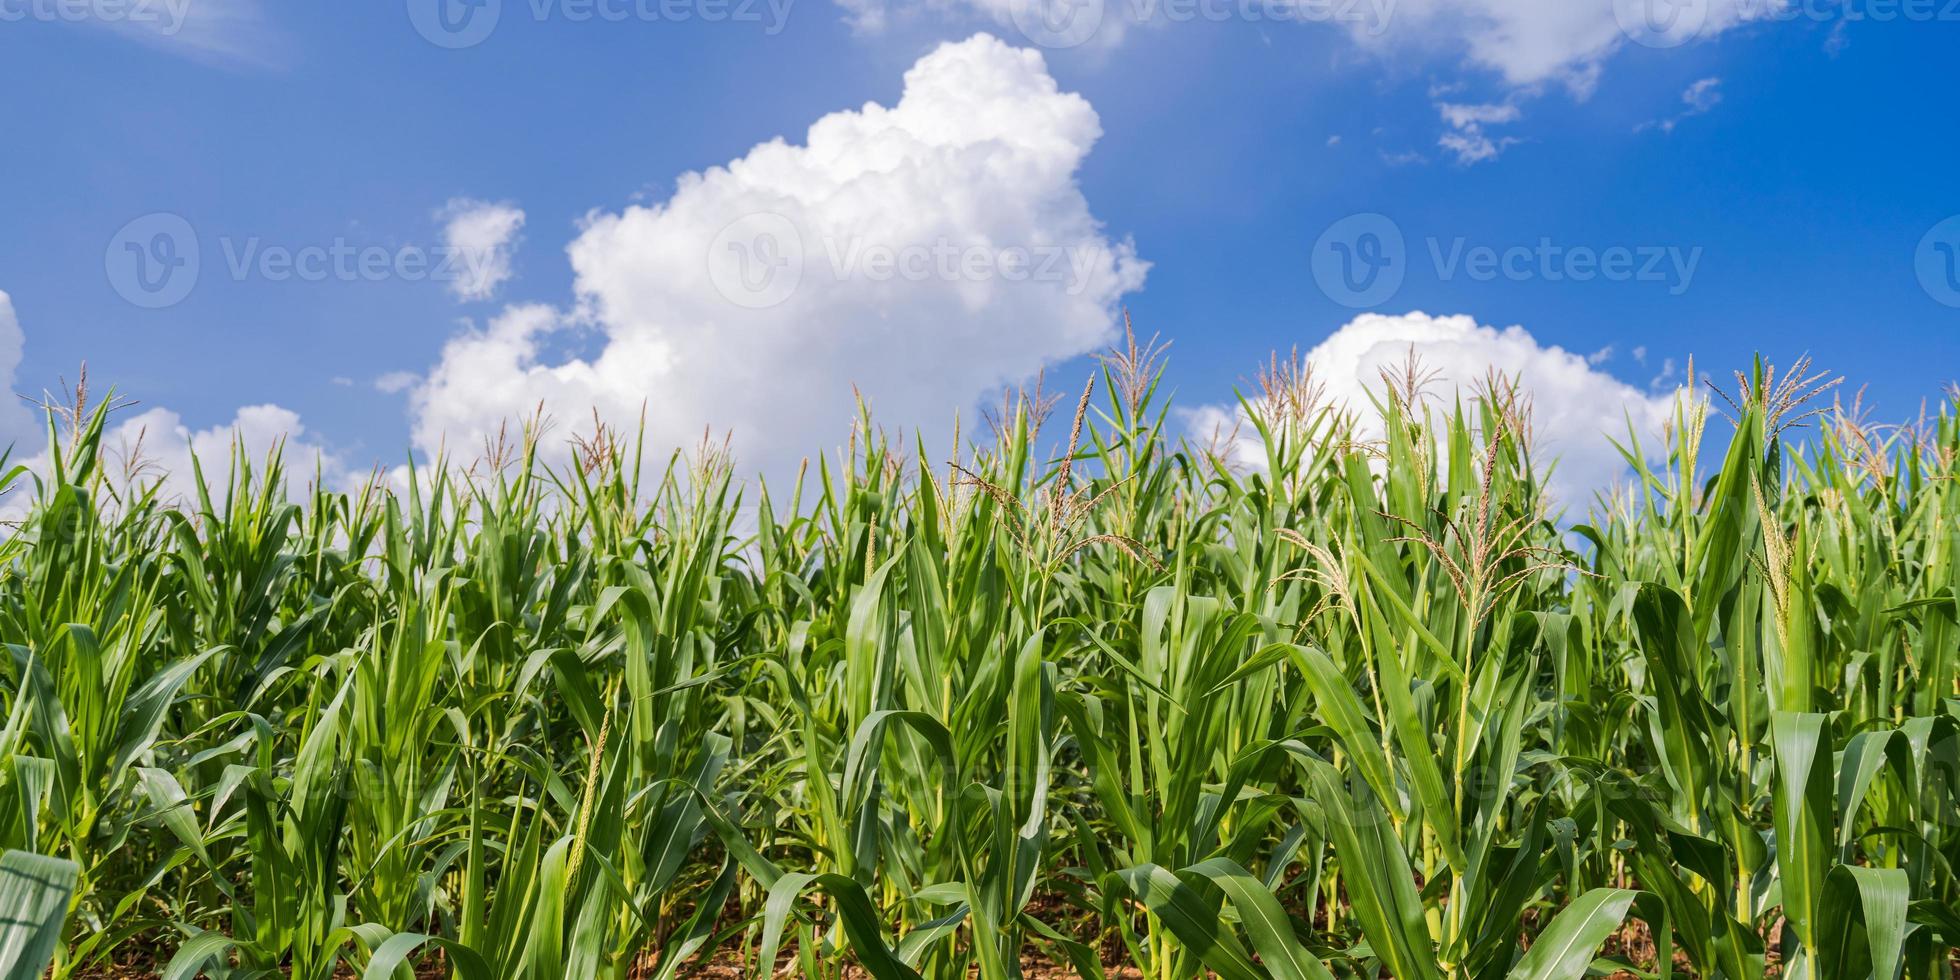 Maisfelder unter dem blauen Himmel foto